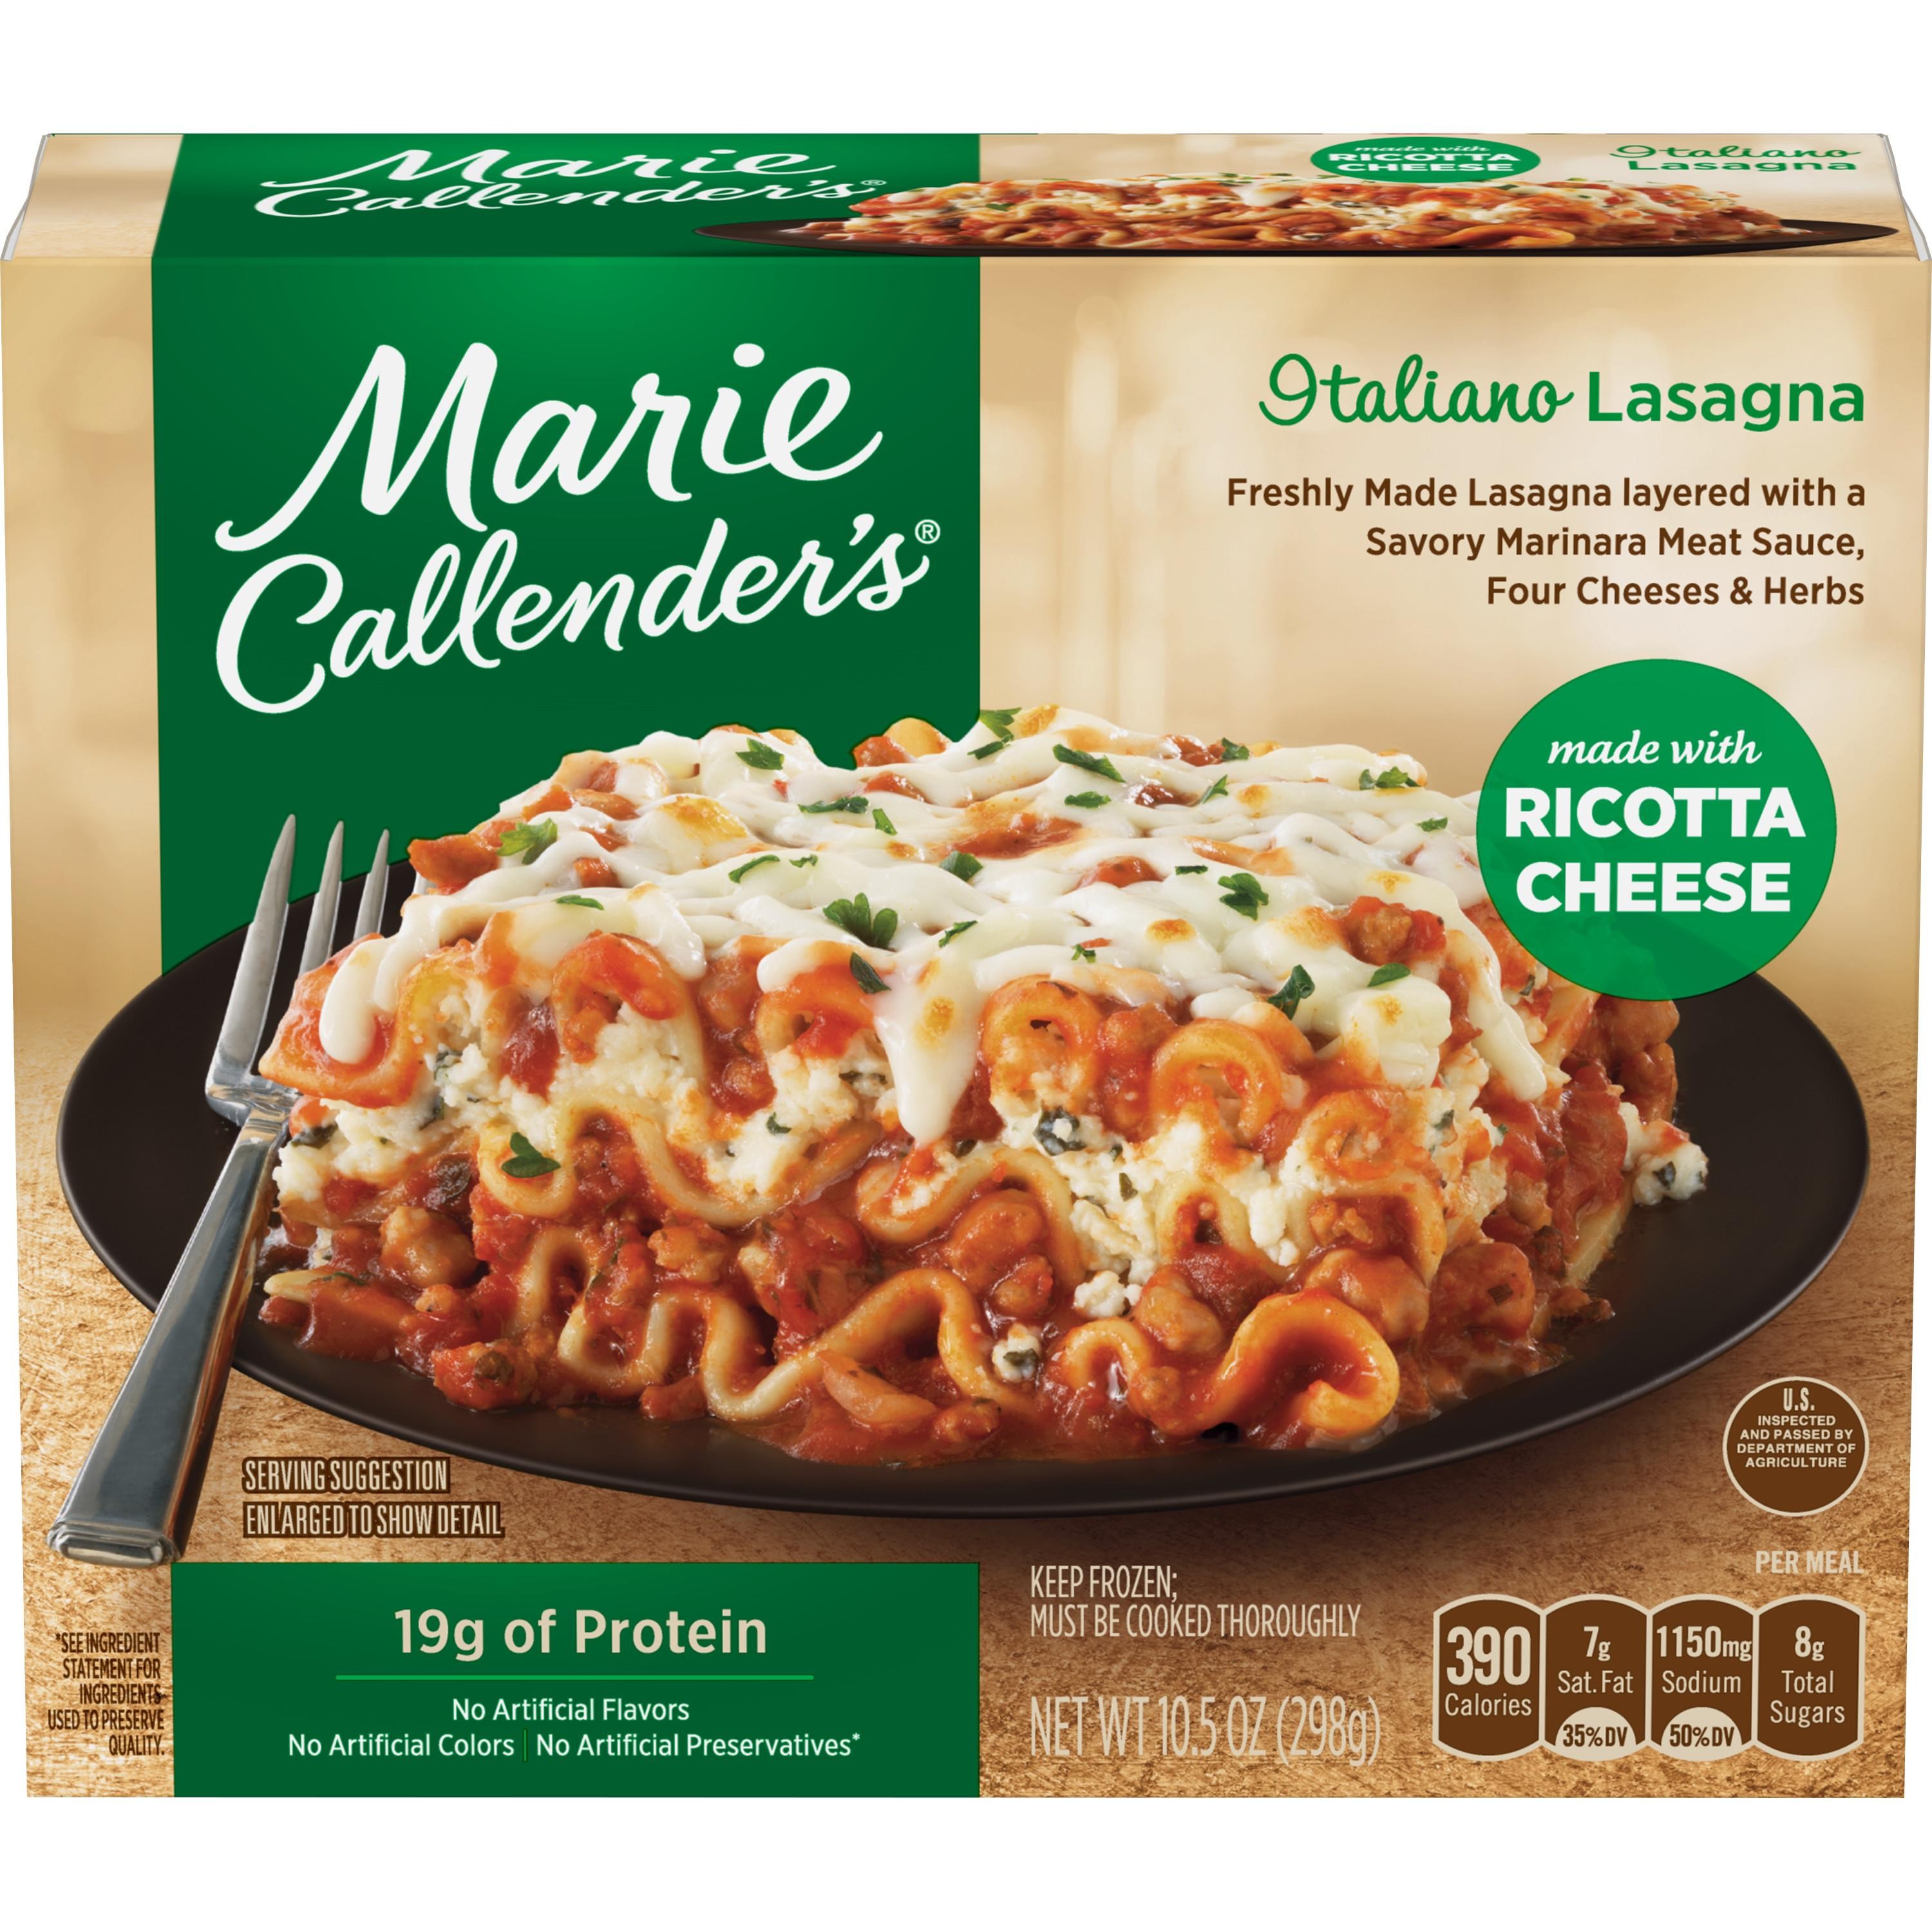 Marie Callendars - Italiano Lasagna